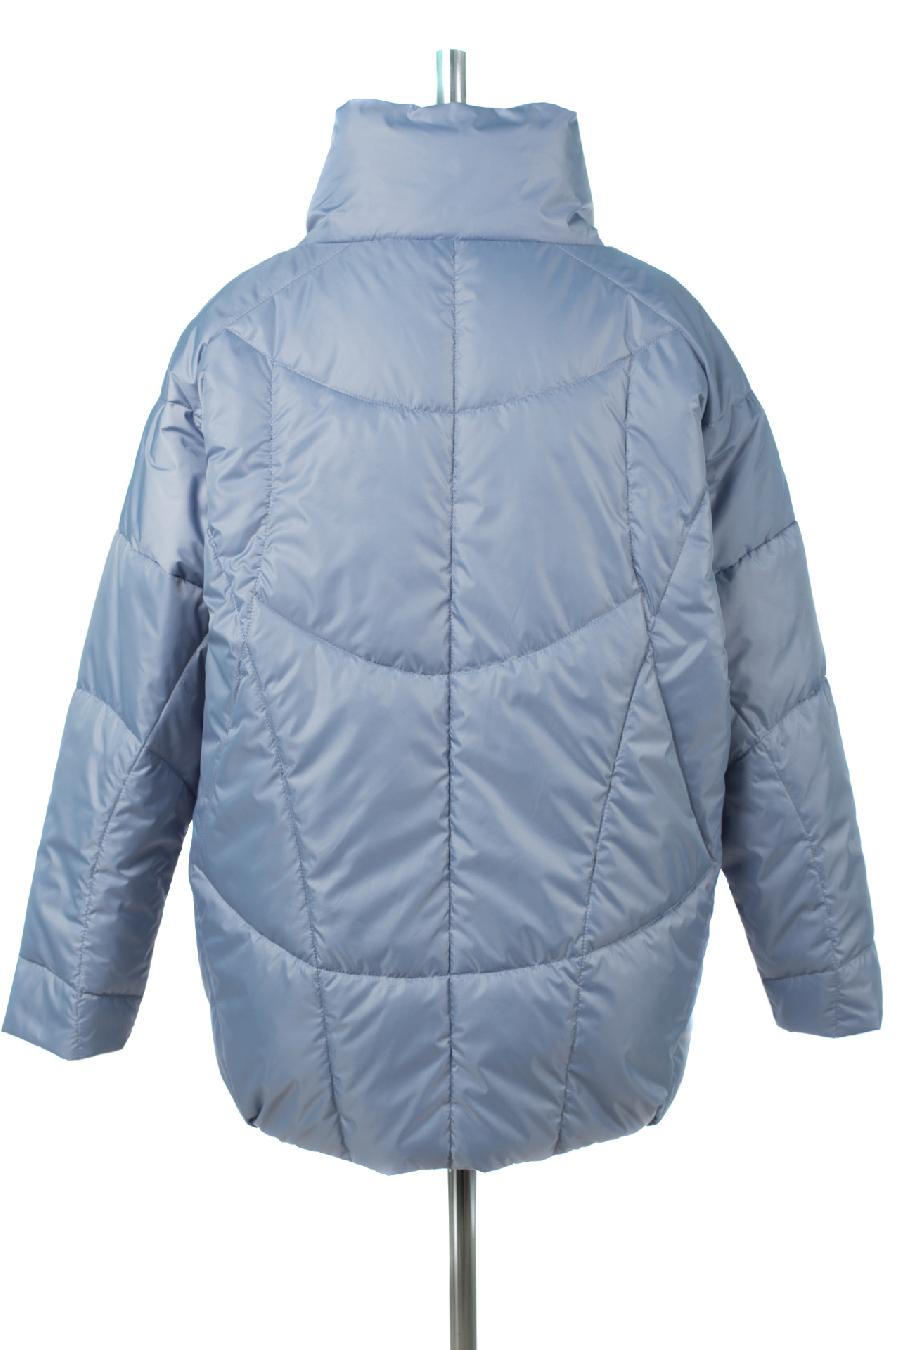 04-2869 Куртка женская демисезонная (G-loft 120) Плащевка серо-голубой